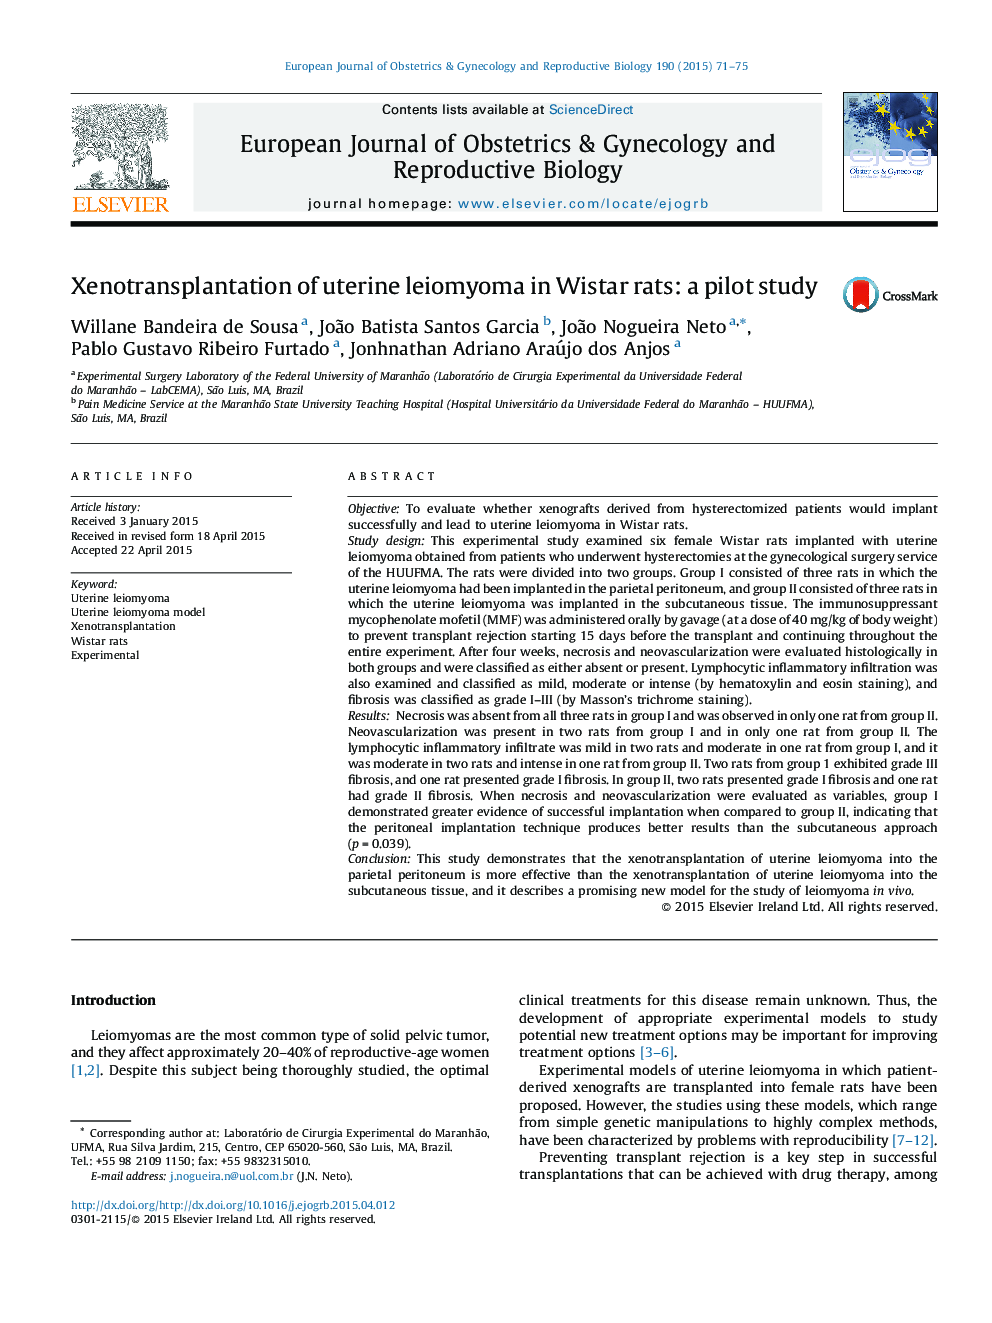 Xenotransplantation of uterine leiomyoma in Wistar rats: a pilot study